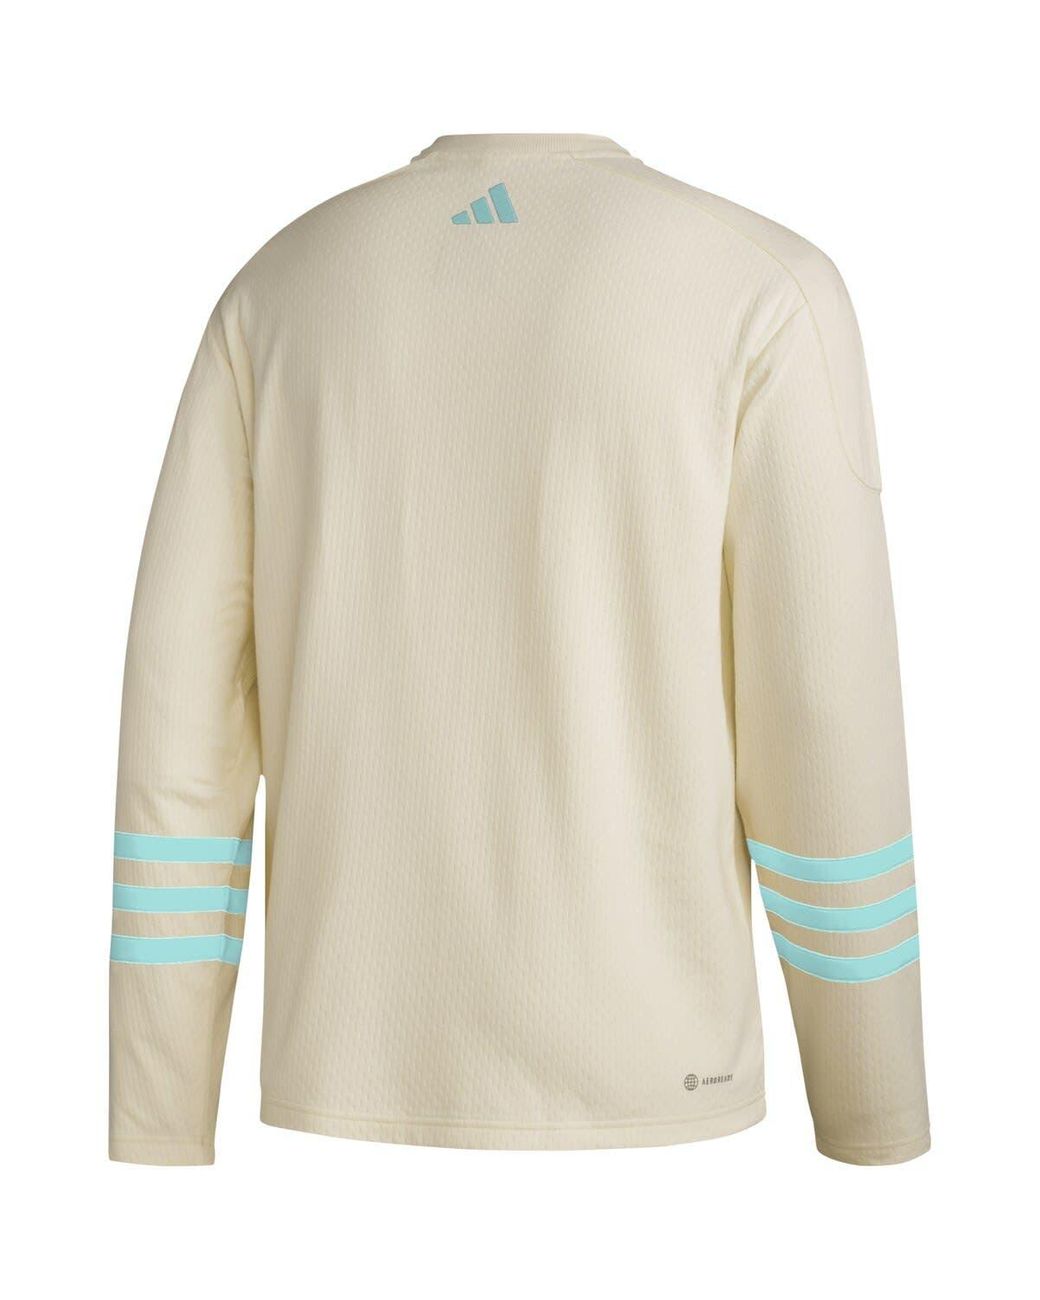 Men's Seattle Kraken adidas Khaki AEROREADY Pullover Sweater